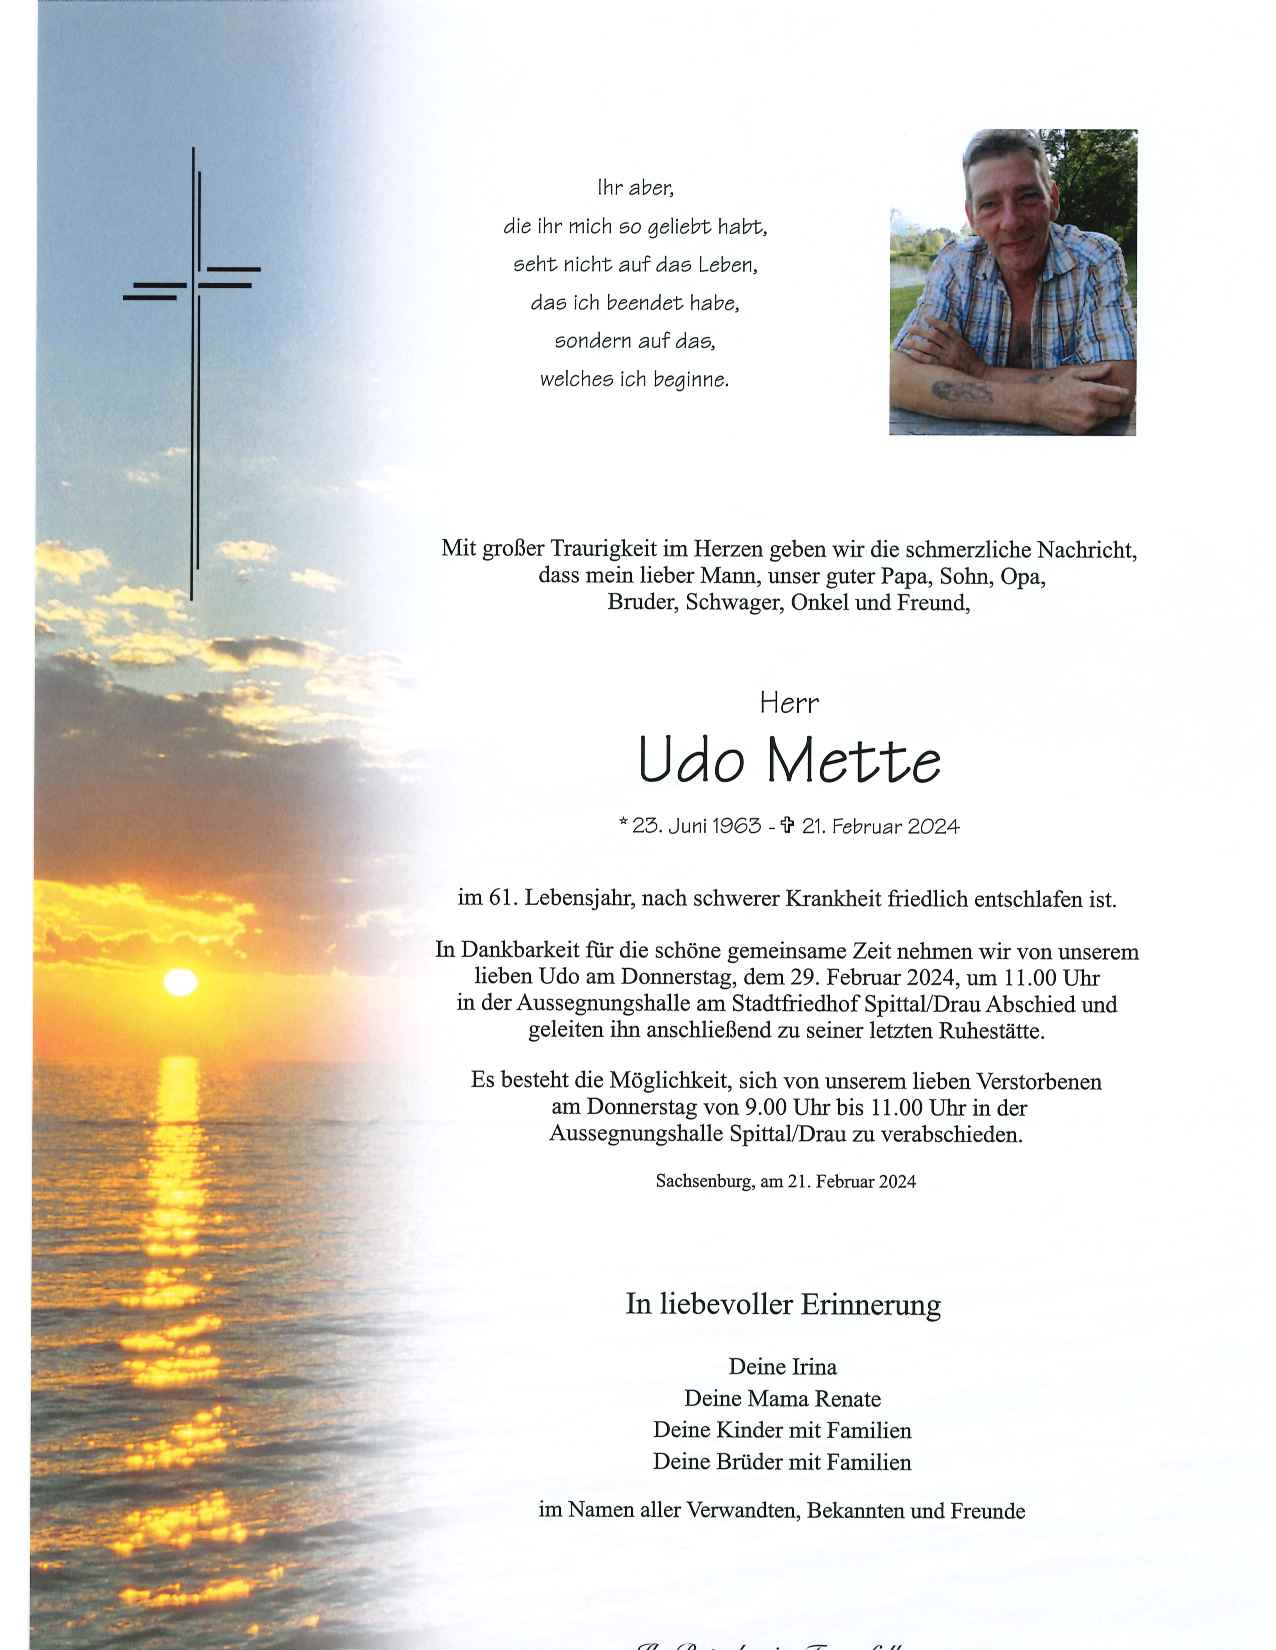 Udo Mette